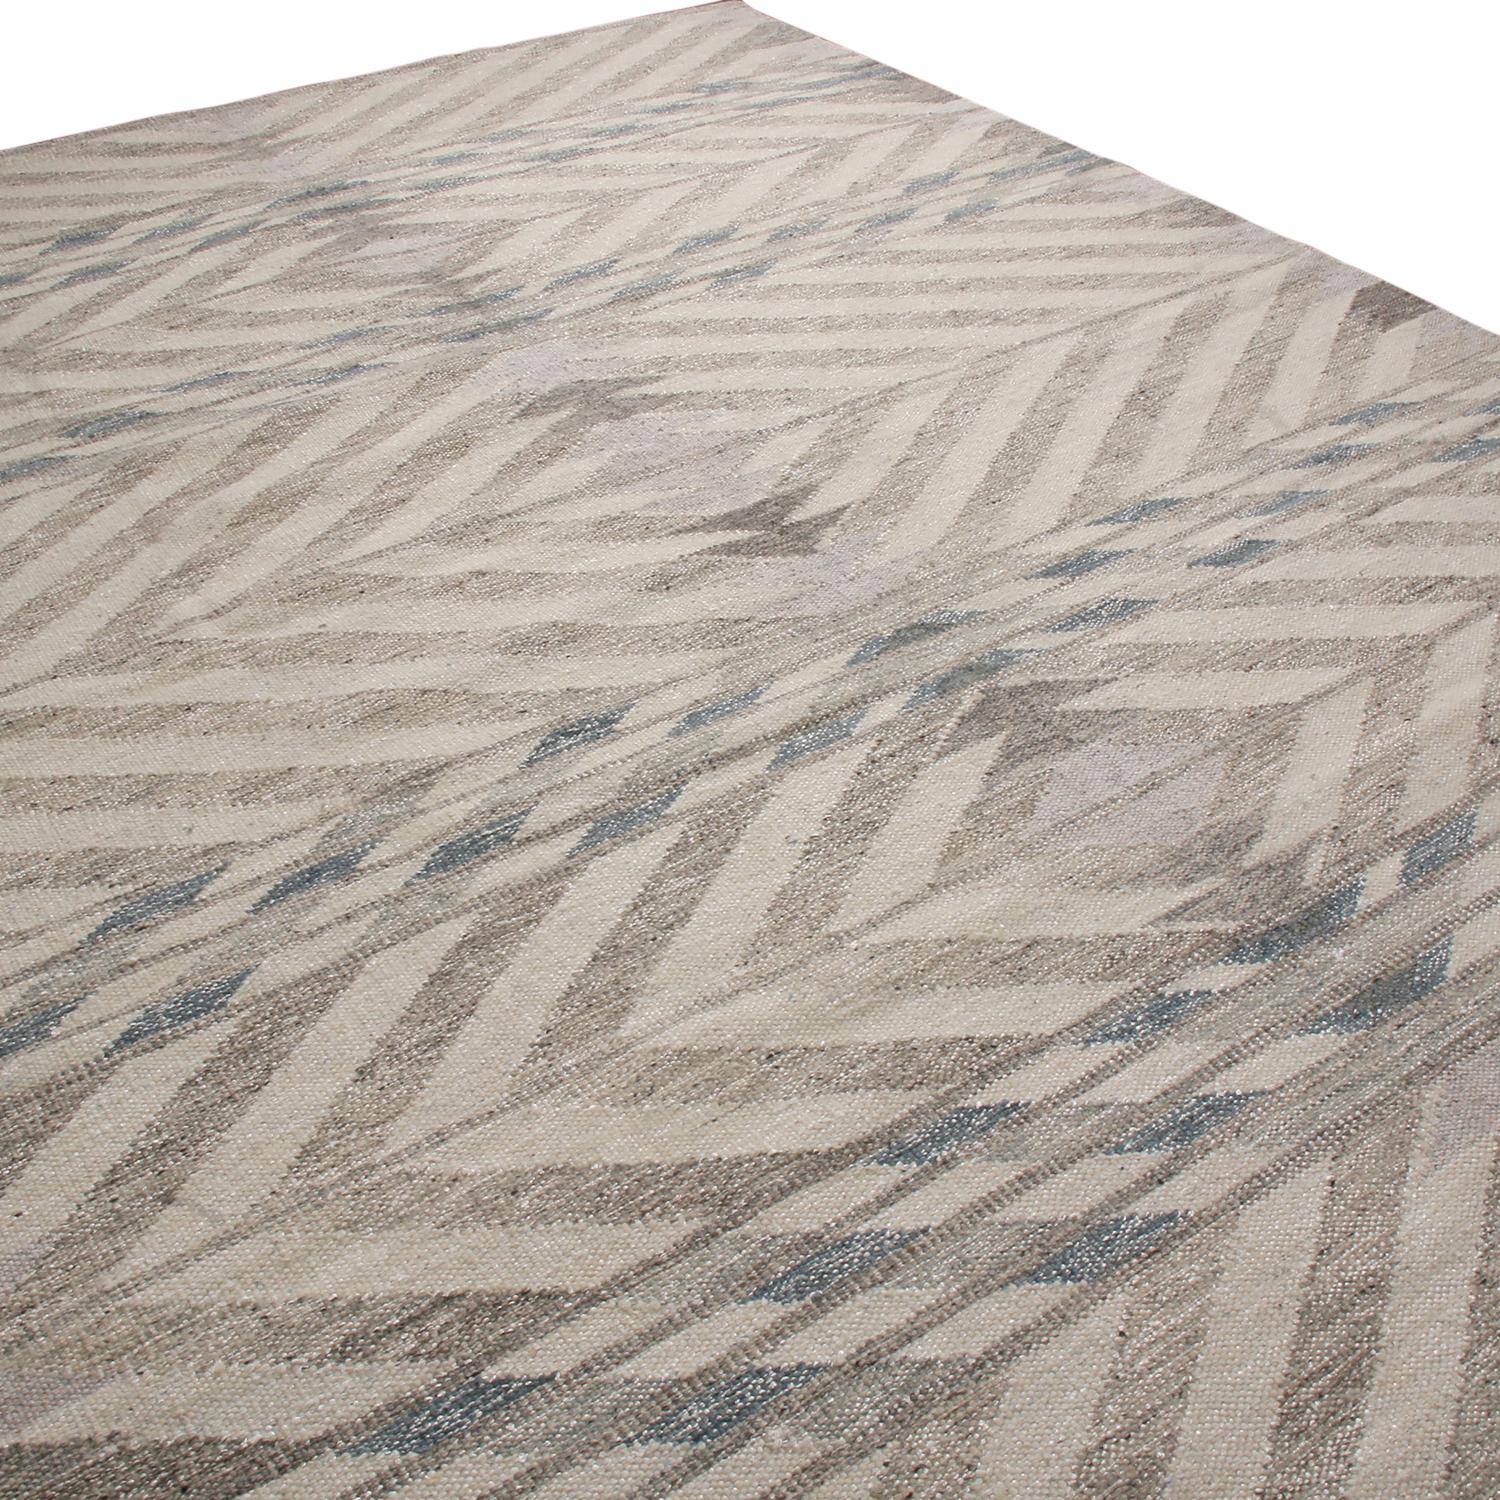 Der handgewebte Teppich im schwedischen Stil von Rug & Kilim gehört zu den neuesten Wollflachgeweben der Scandinavian Collection und bietet unseren einzigartigen, raffinierten, großformatigen Ansatz für die Geometrie und die Vintage-Farben, die